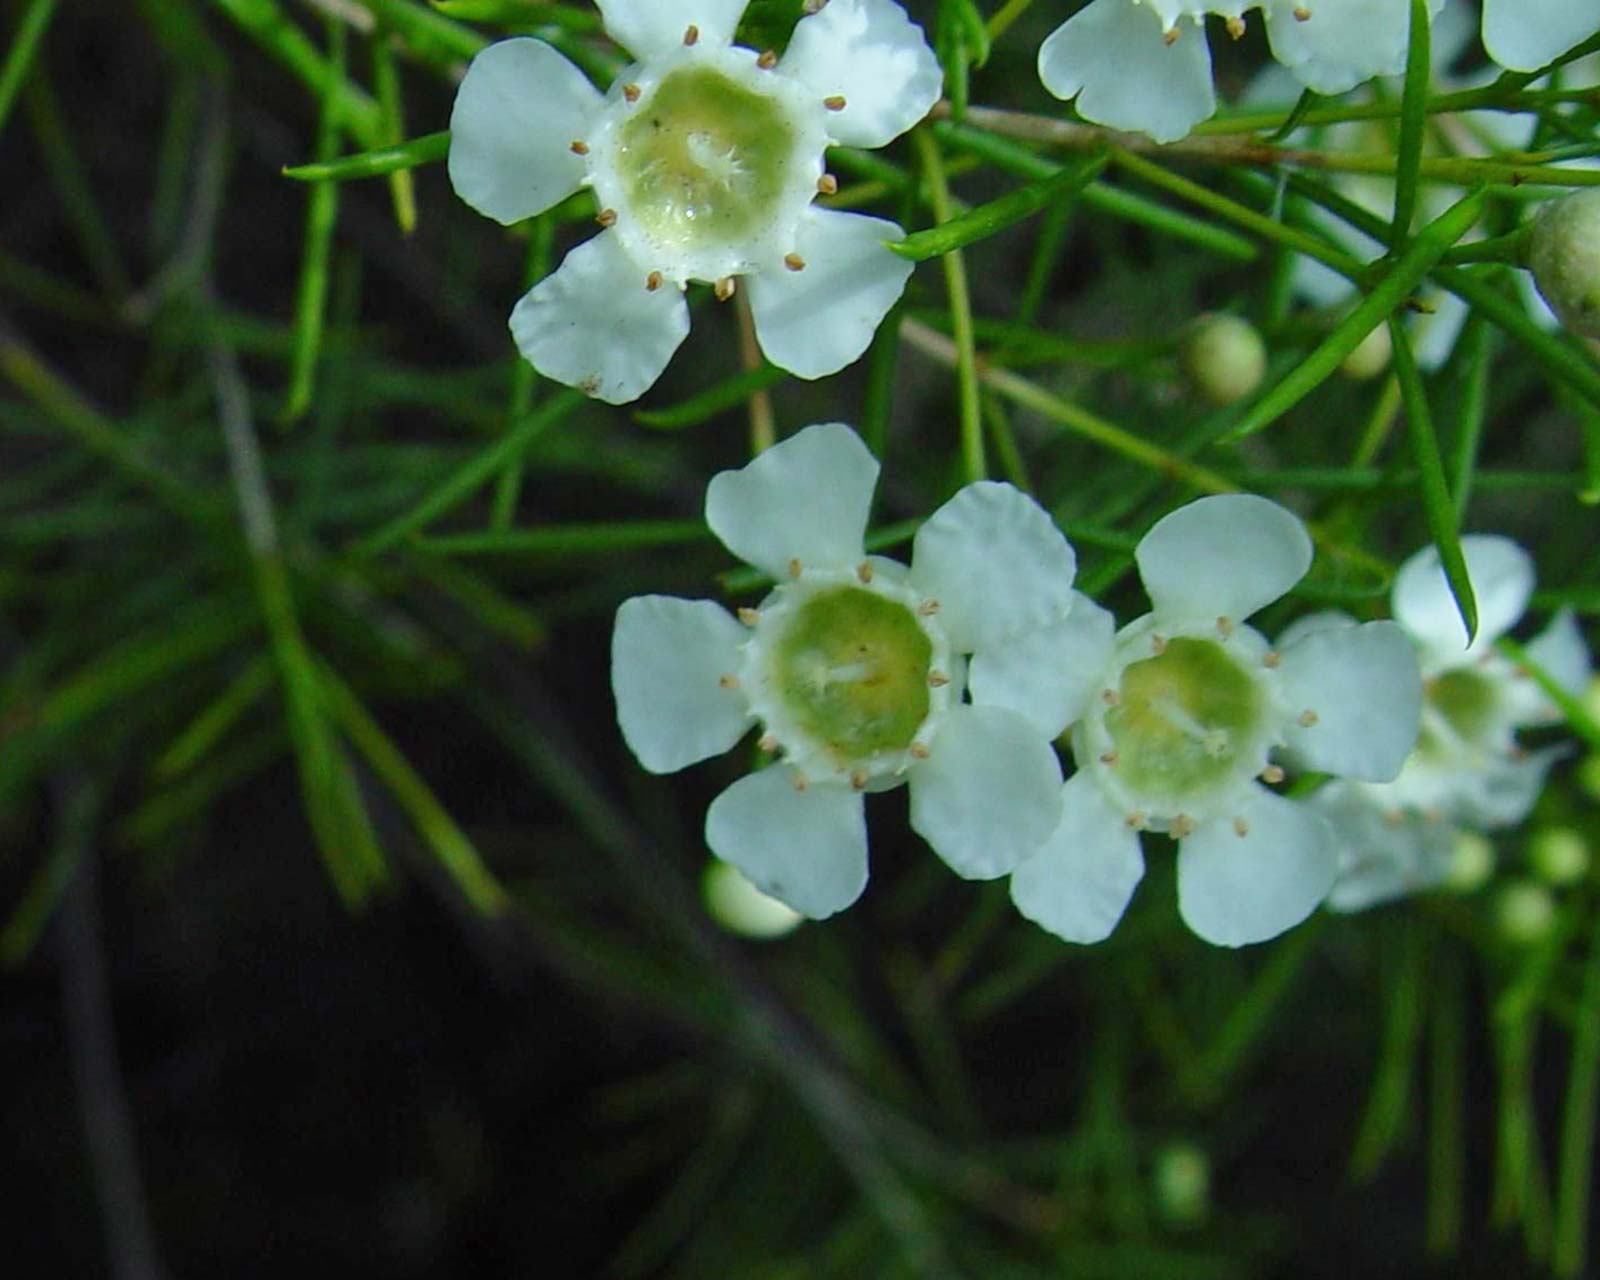 Chamelaucium uncinatum - white flowers - photo Leon Brooks